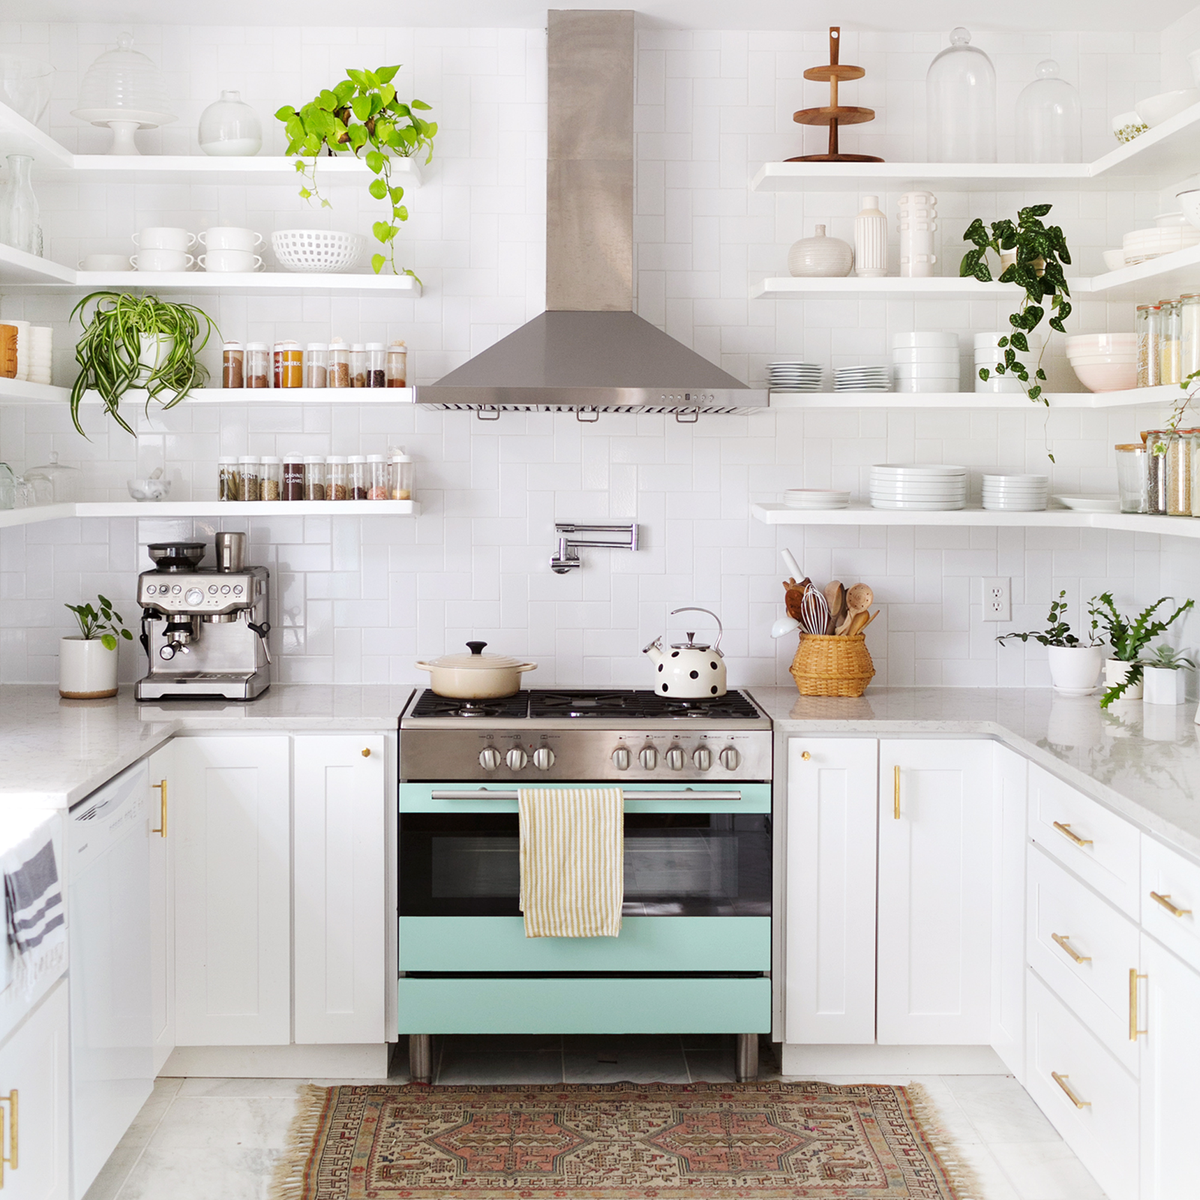 50 Best Kitchen Ideas 2020 - Modern & Rustic Kitchen Decor Ideas